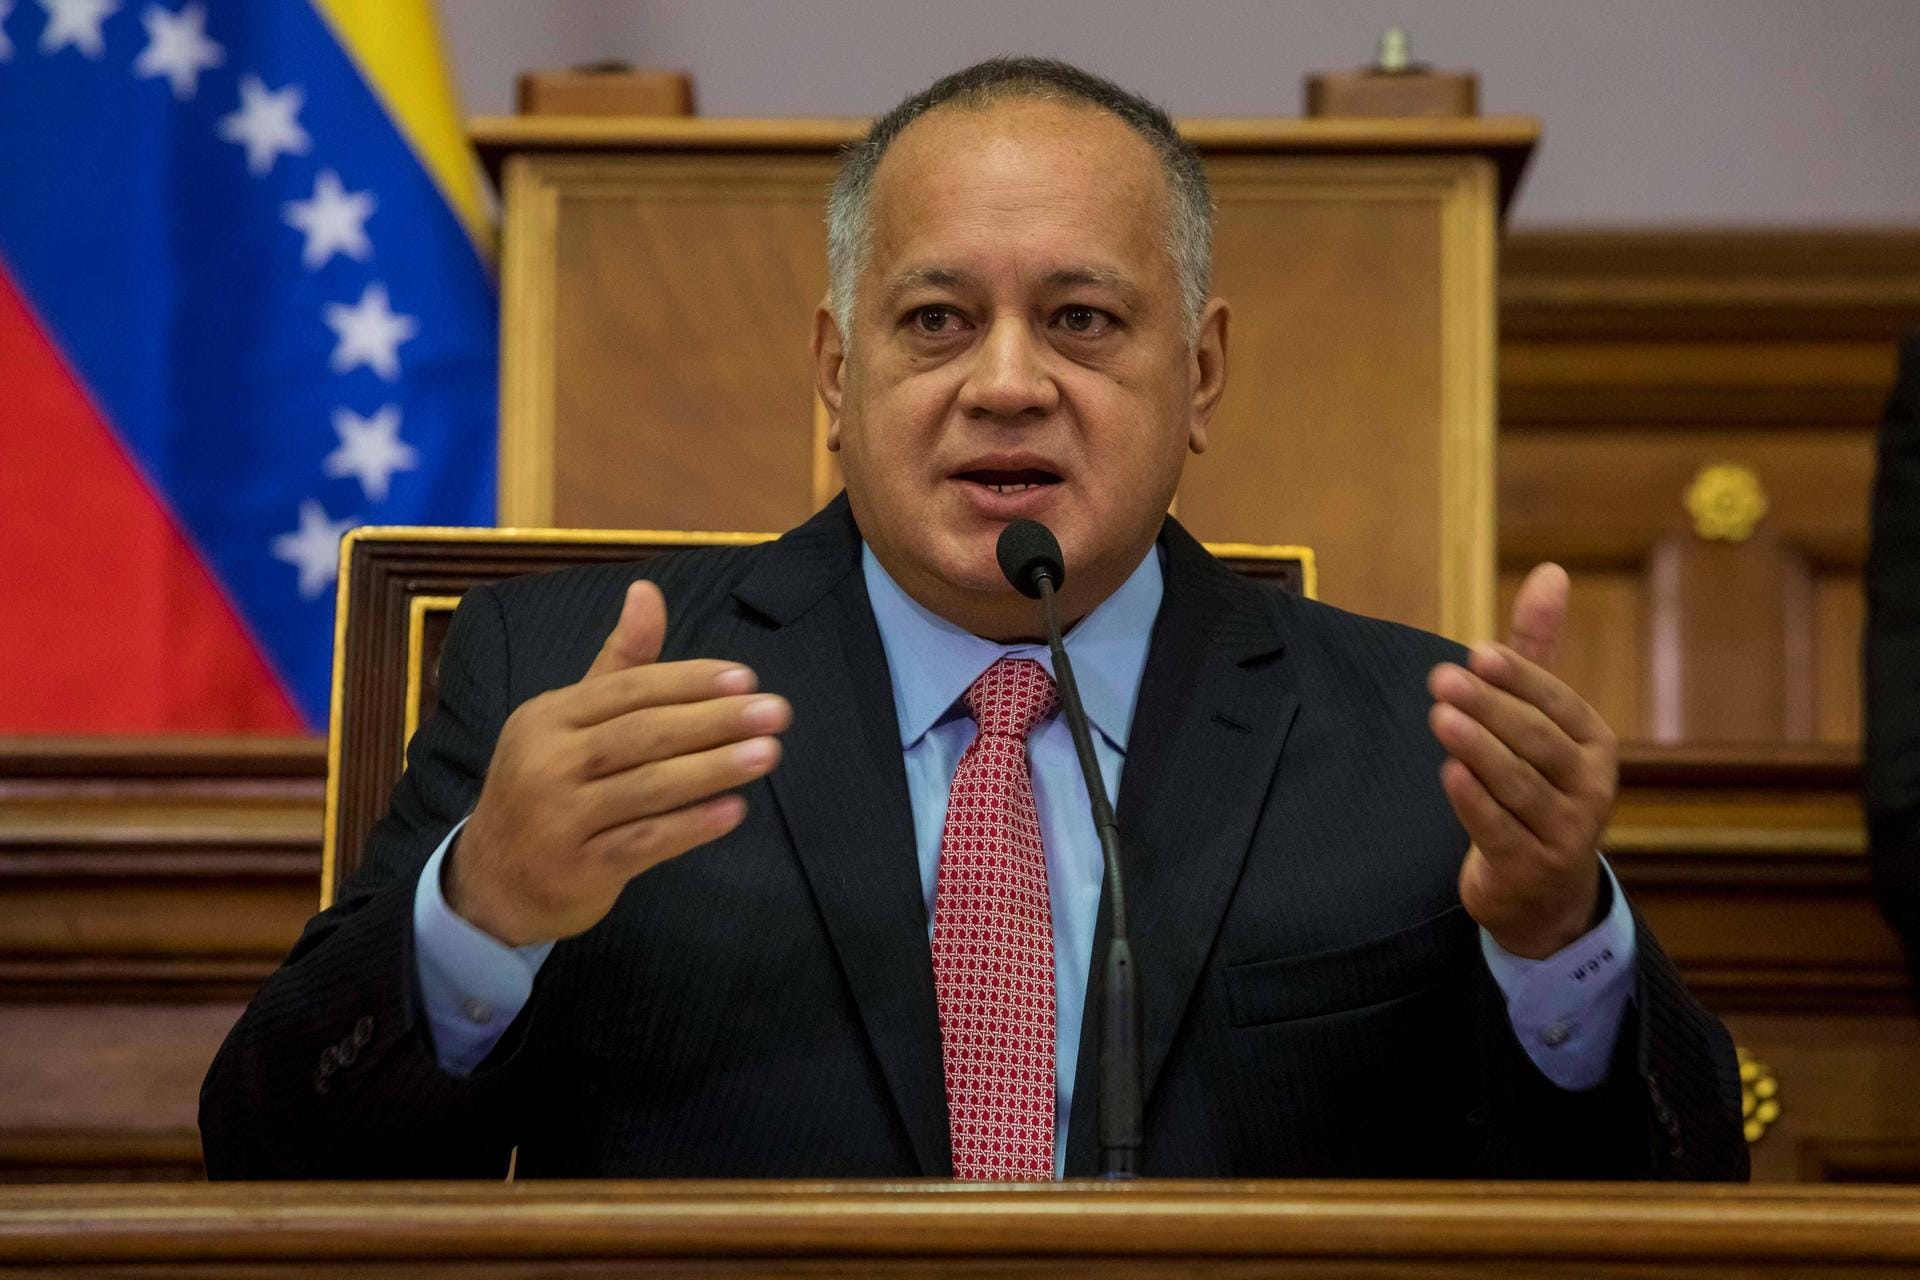 Auch in Venezuela steckten sich mehrere führende Politiker mit Corona an. Darunter der Vorsitzende der Verfassungsgebenden Versammlung, Diosdado Cabello (im Bild), und Ölminister Tareck El Aissami. Cabellos positiver Test wurde am 10. Juli bekannt.